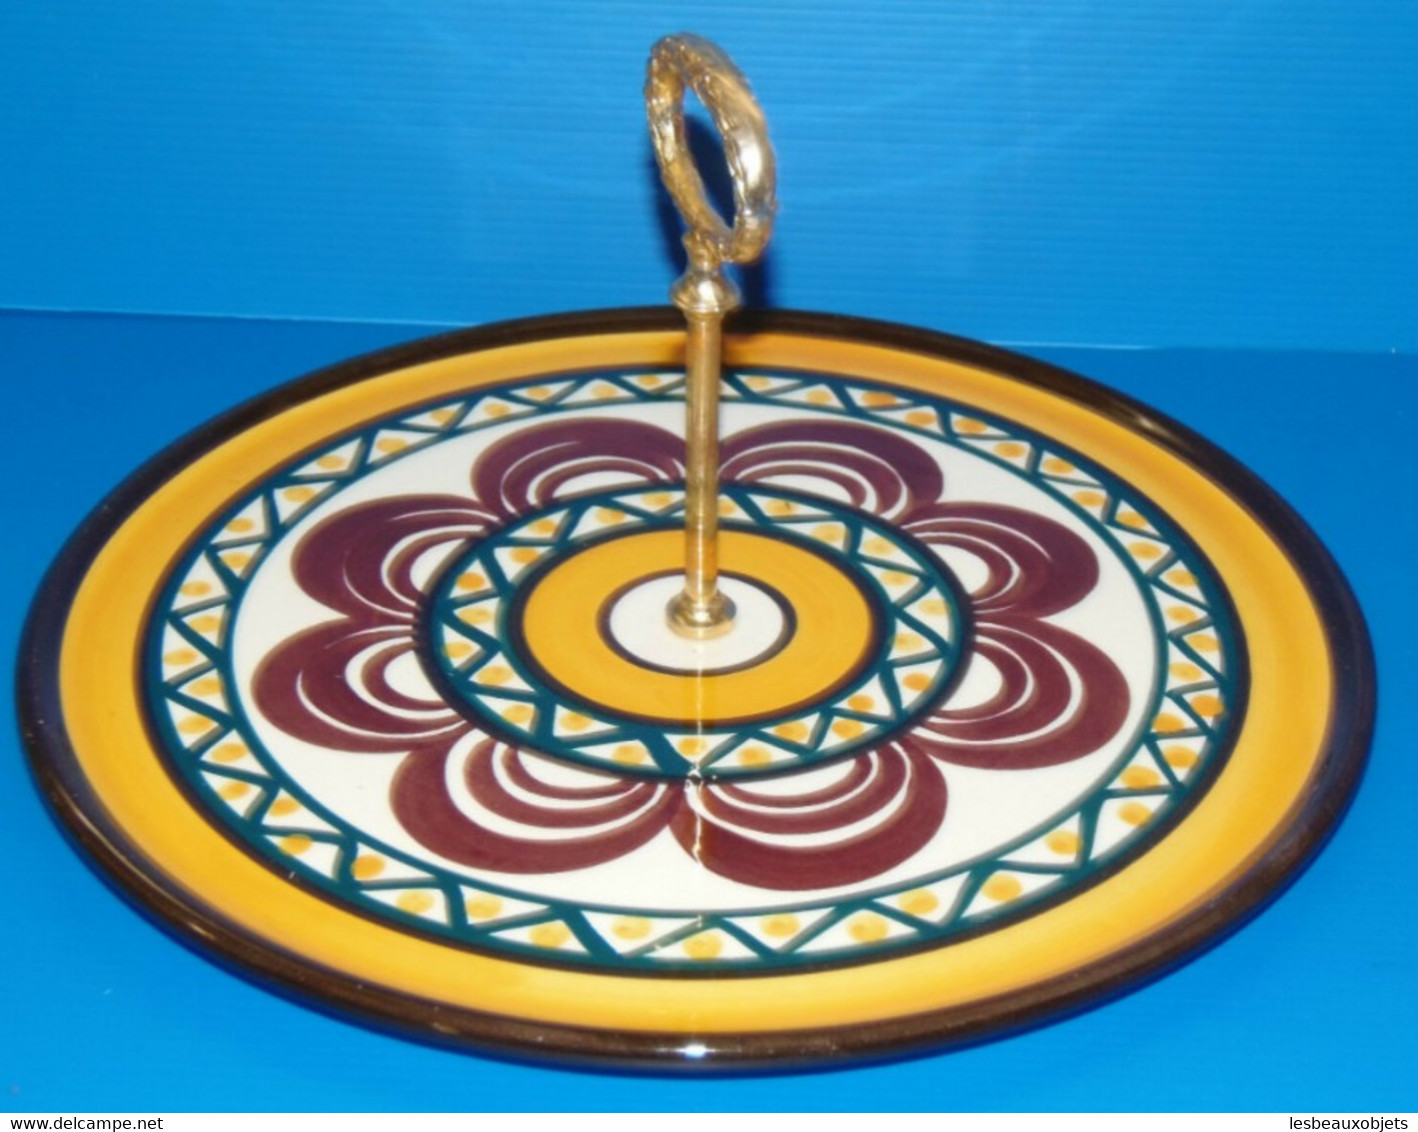 JOLI PLAT A FROMAGES en CERAMIQUE SAINT JEAN de BRETAGNE décor motifs colorés COLLECTION DECO TABLE VITRINE